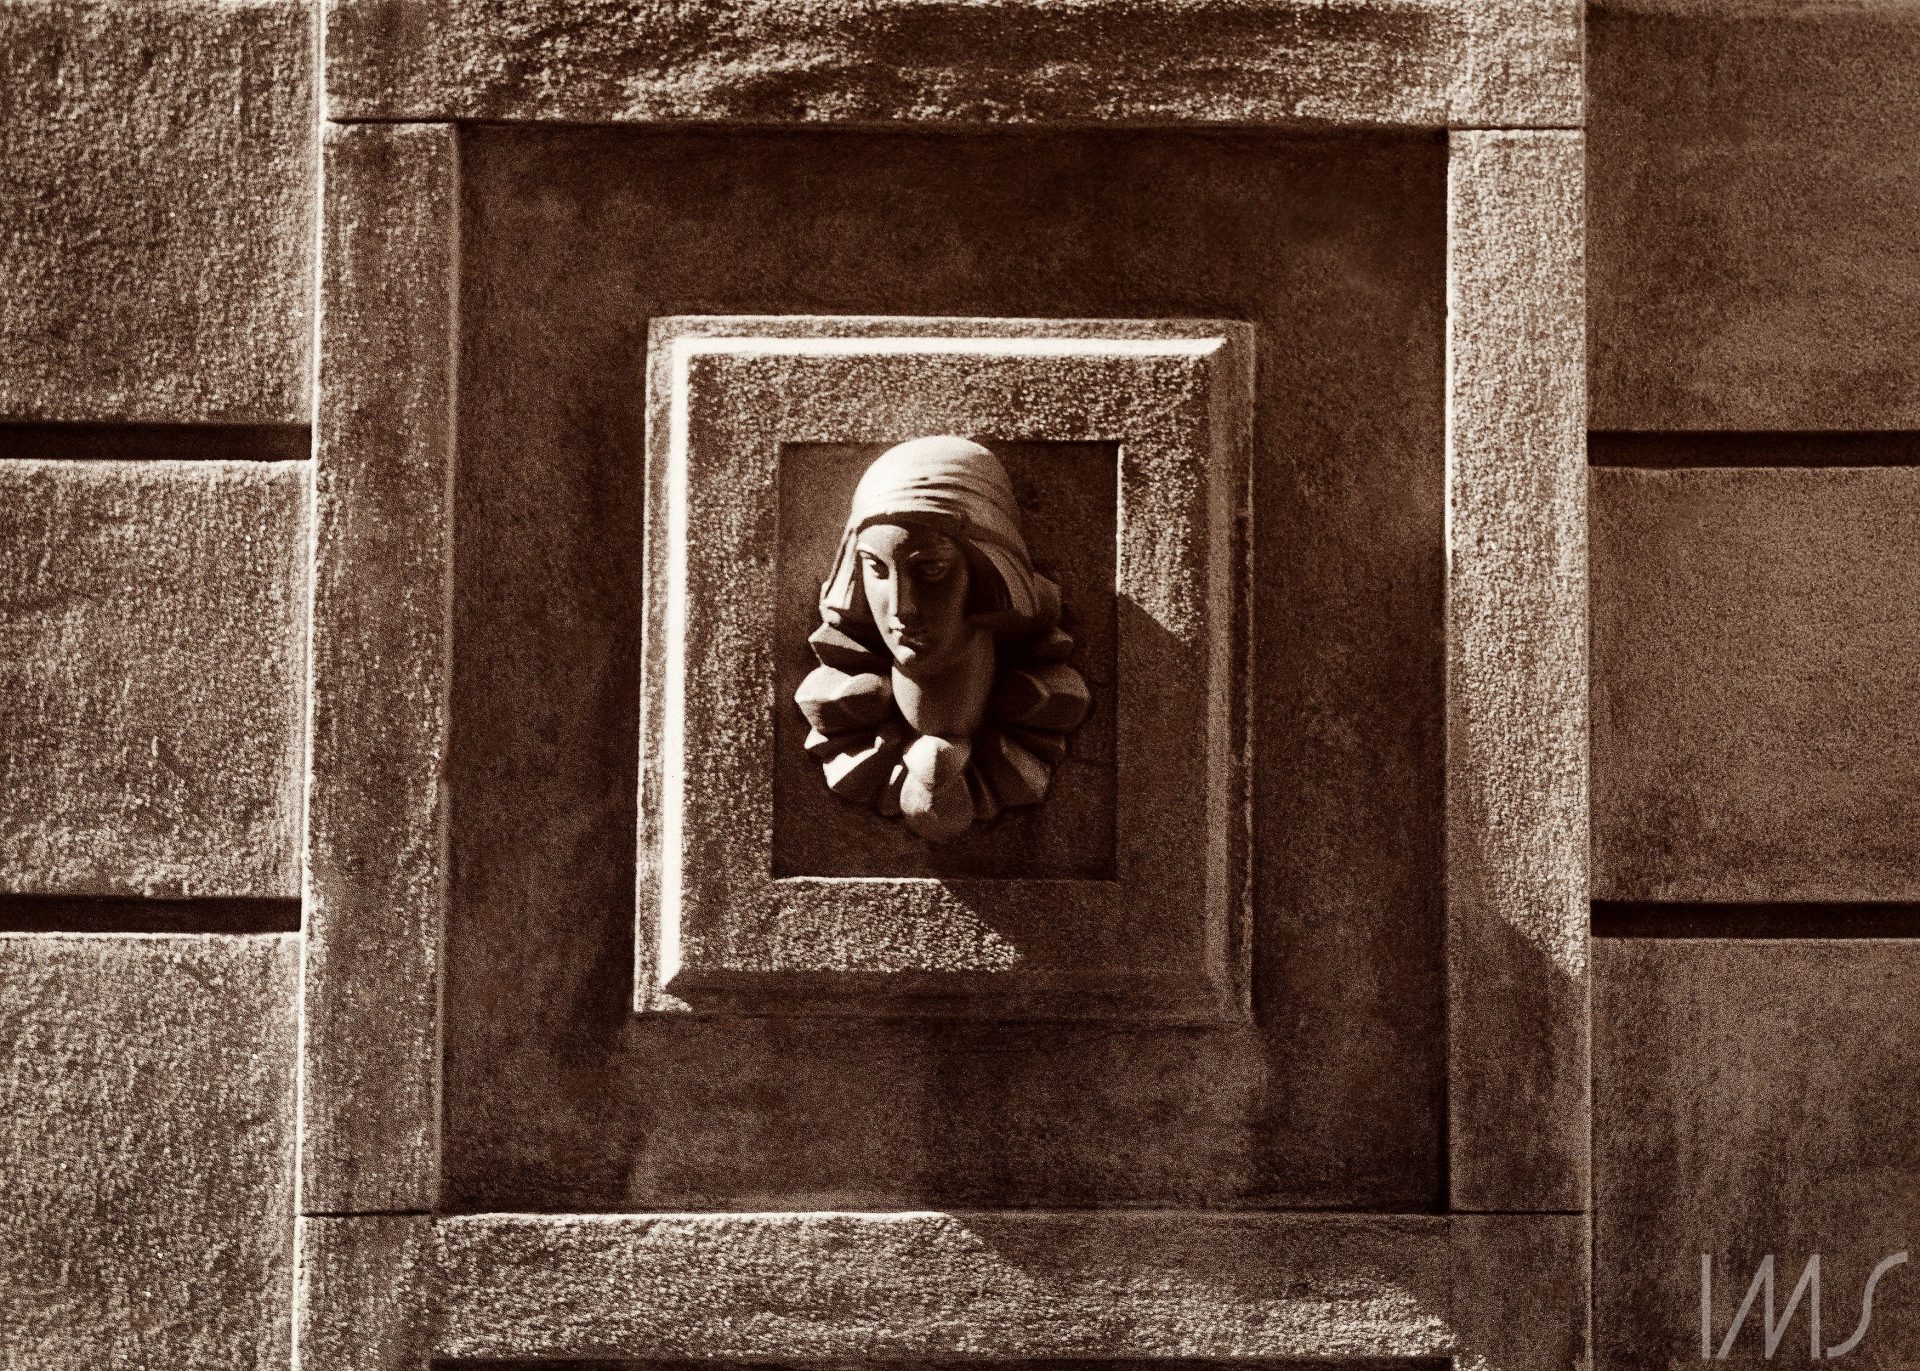 Cabeça de mulher, ao centro de detalhe, em fachada de edificação, Rio de Janeiro, 1988 (Rossini Perez/Acervo IMS)